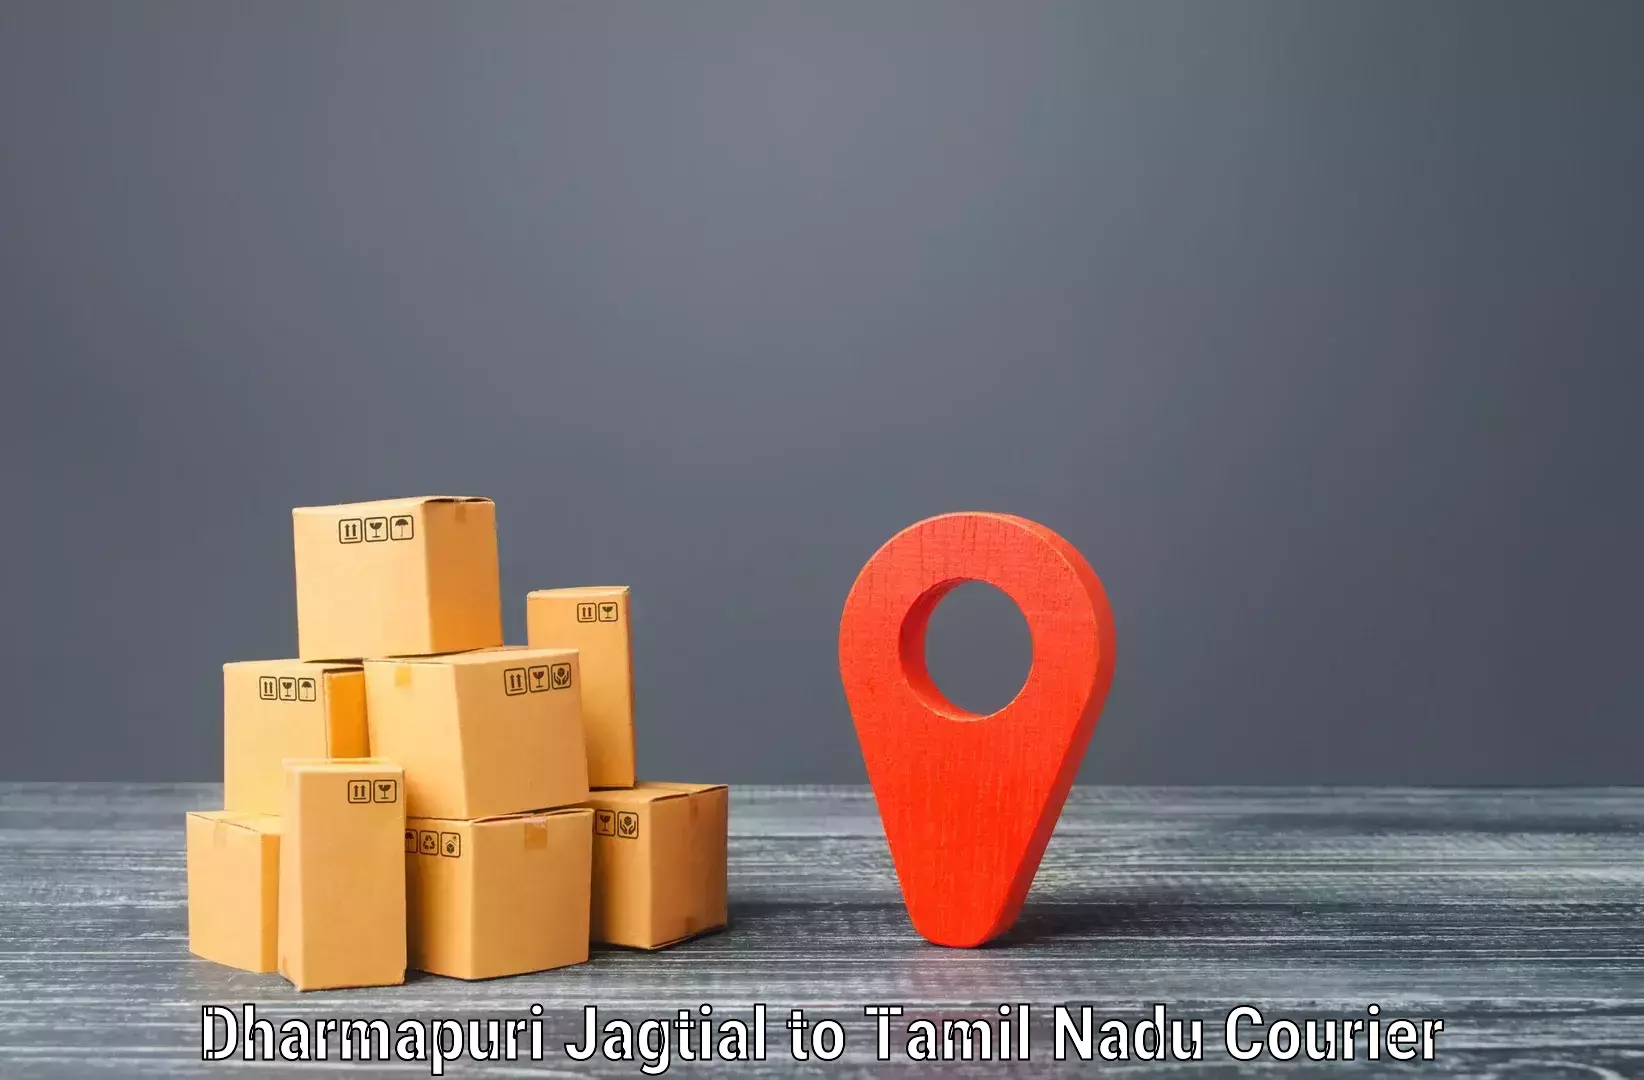 Courier tracking online Dharmapuri Jagtial to Periyakulam